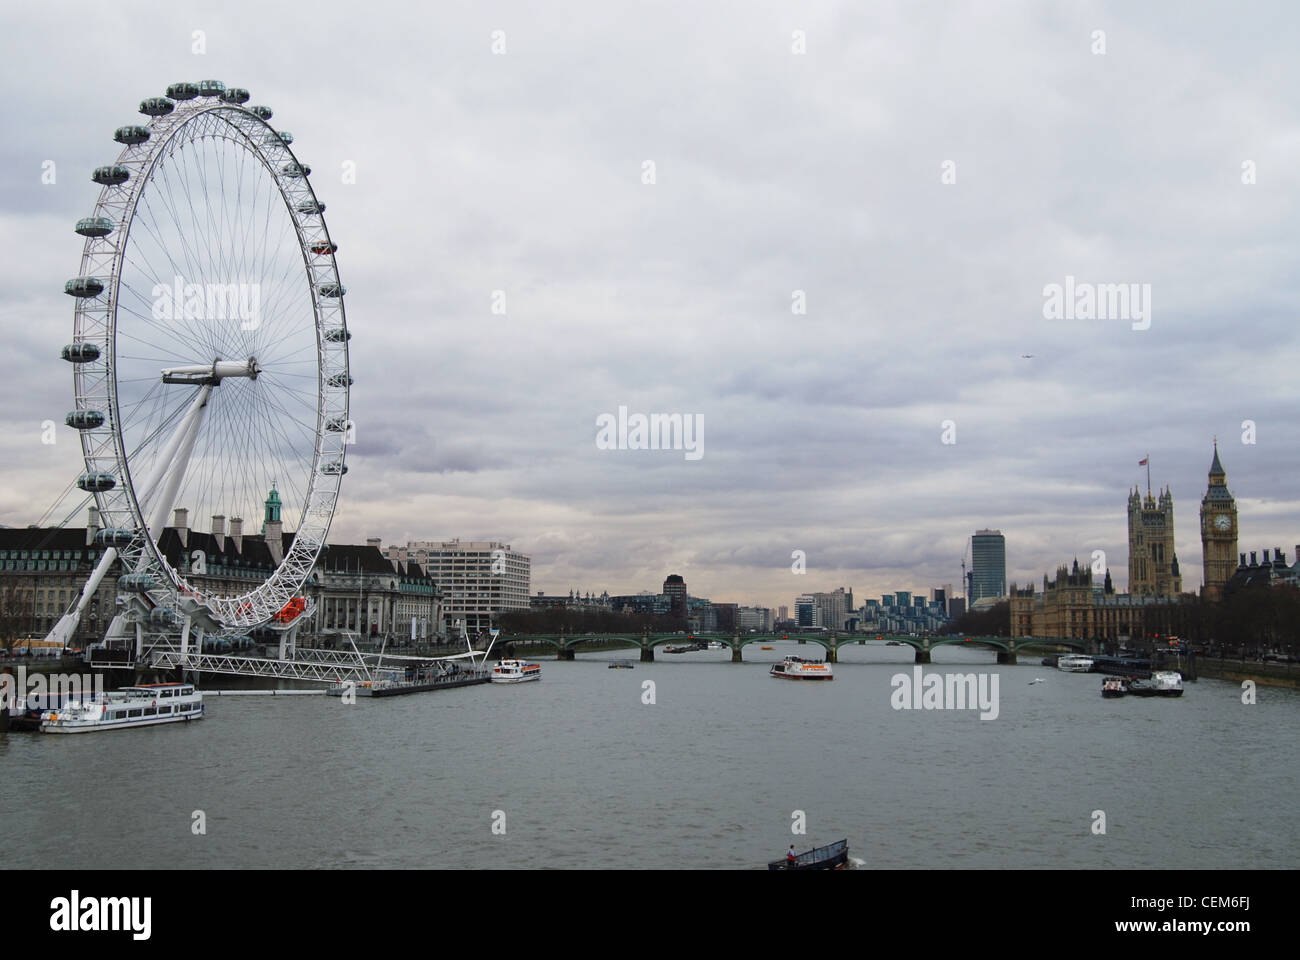 London Eye - Sightseeing London, Vereinigtes Königreich - beliebte touristische Lage - Riesenrad - am Themse Stockfoto